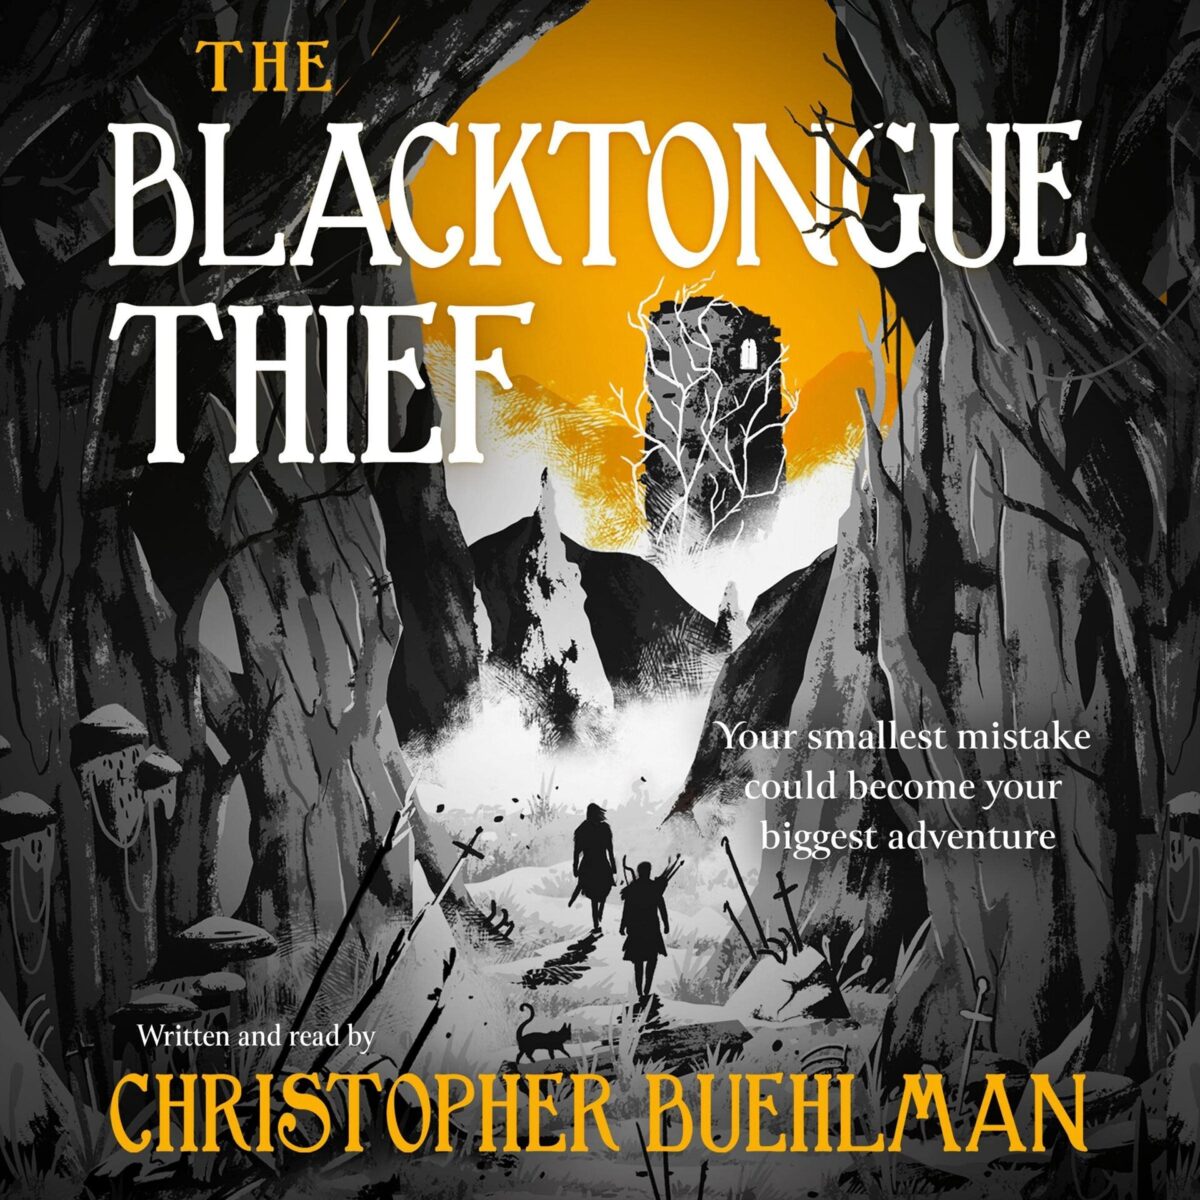 [1] The Blacktongue Thief